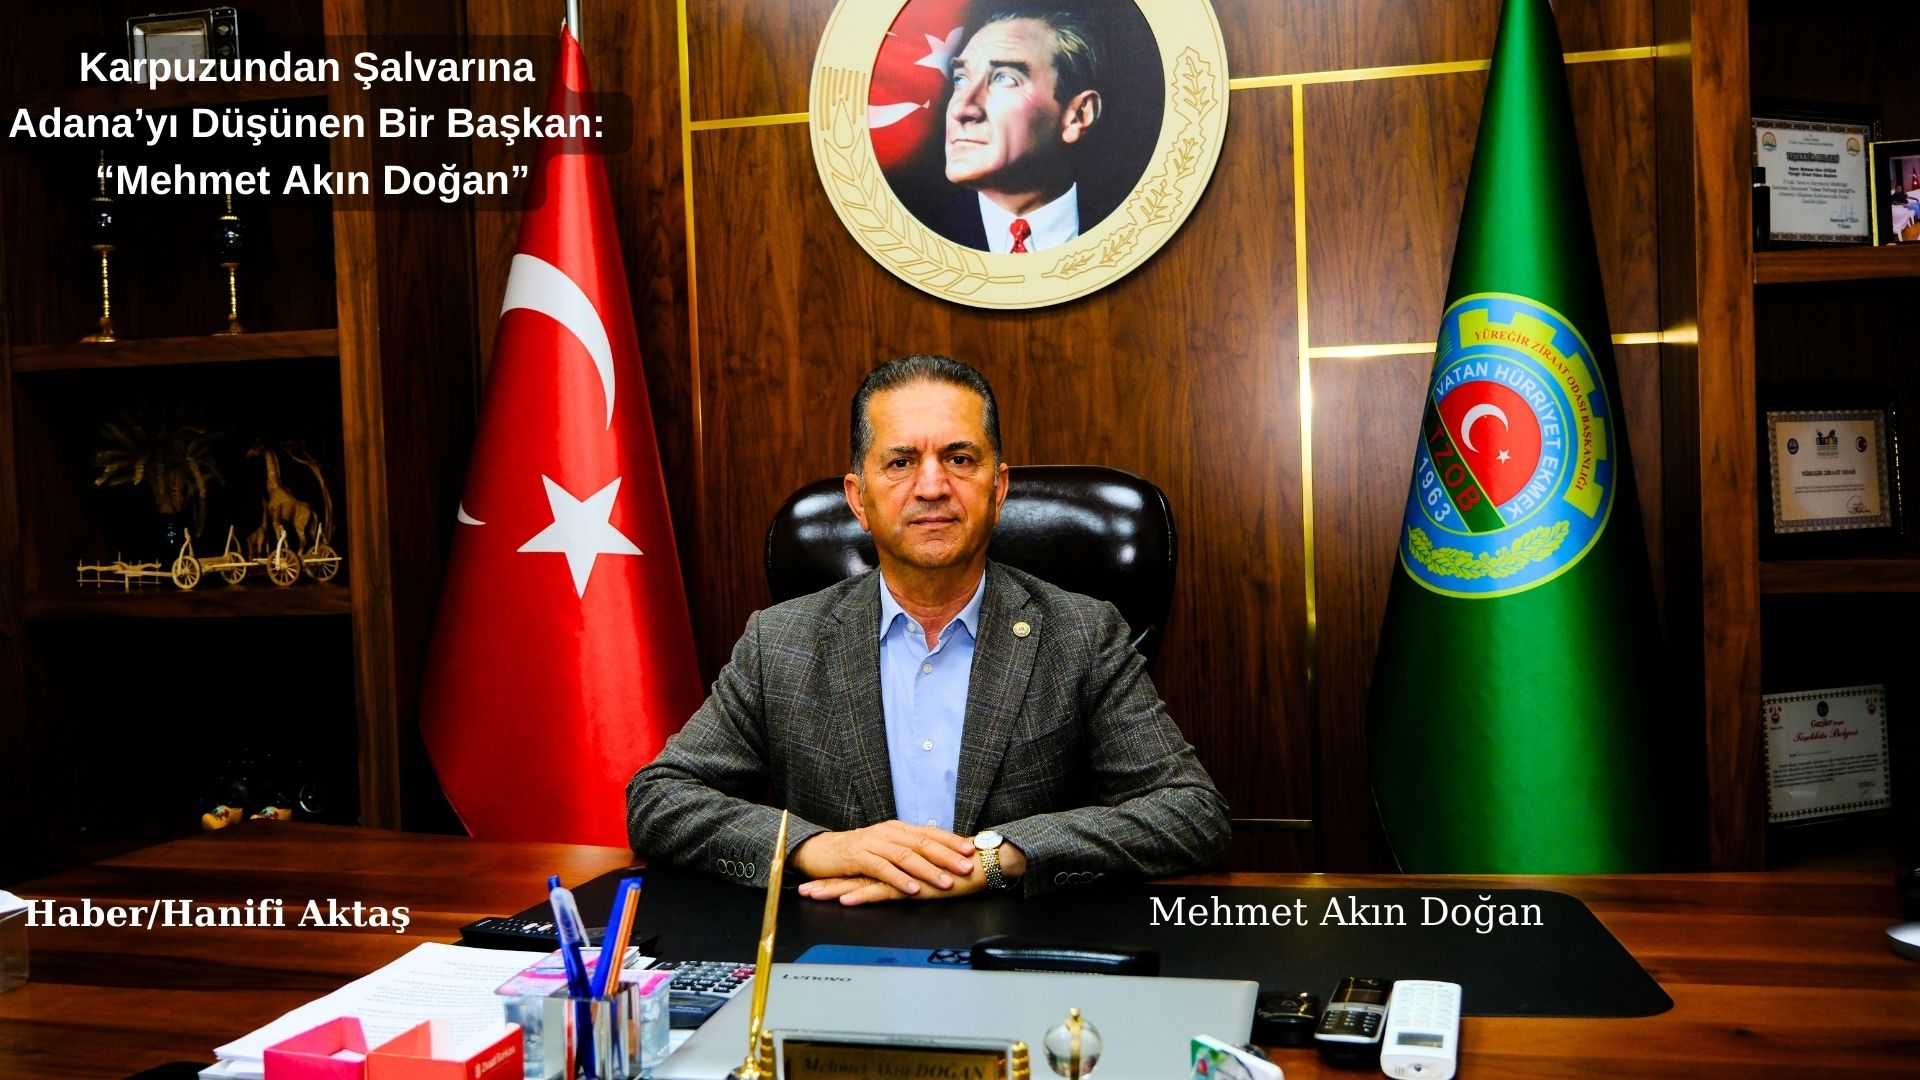 Karpuzundan Şalvarına Adana’yı Düşünen Bir Başkan: “Mehmet Akın Doğan”